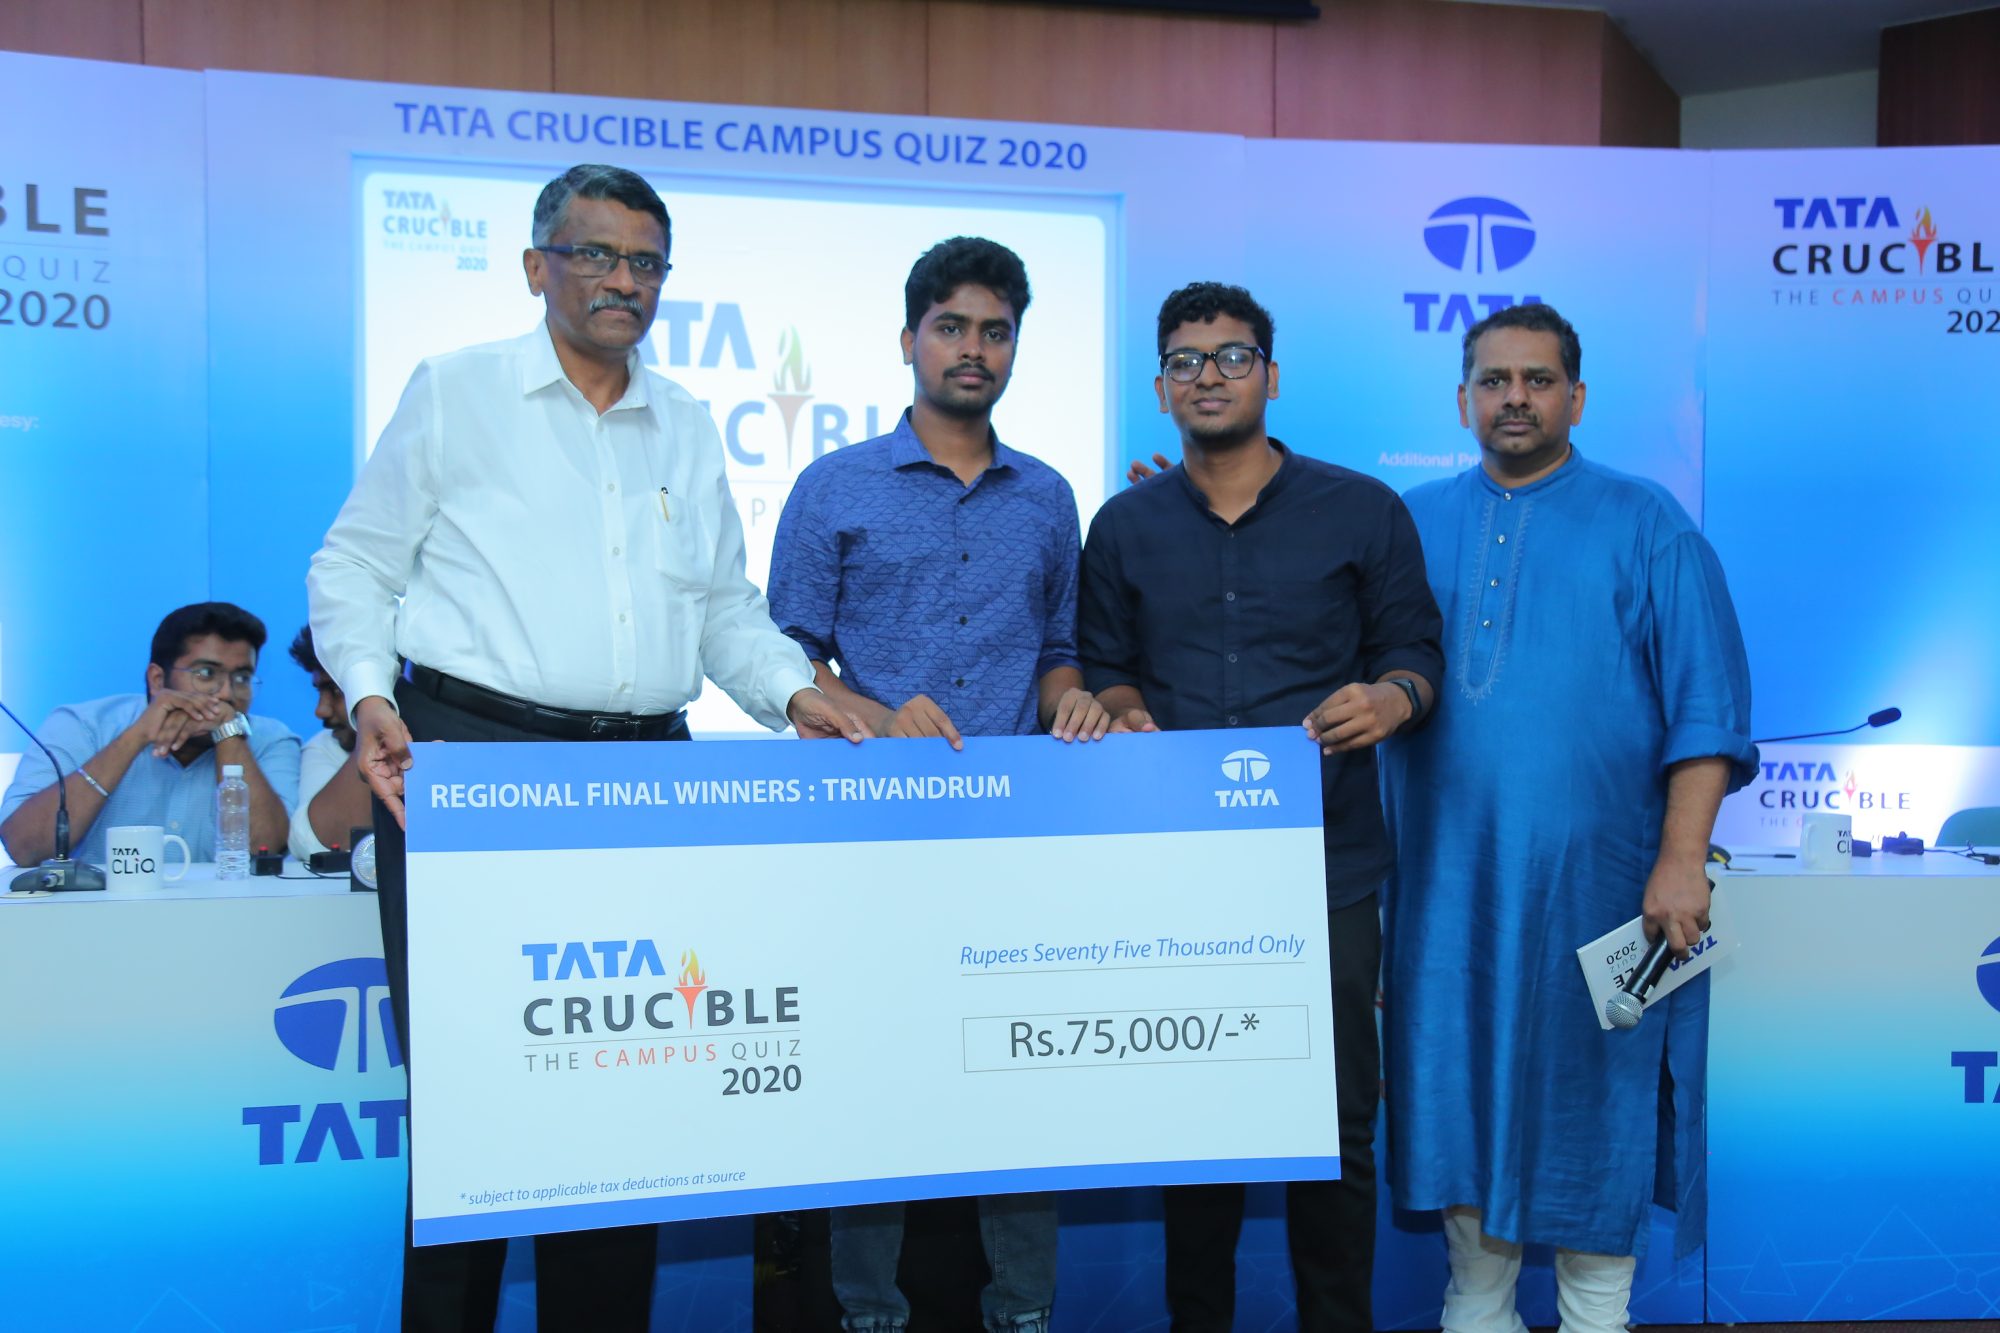 Tata Crucible Campus Quiz 2020 trivandrumcam